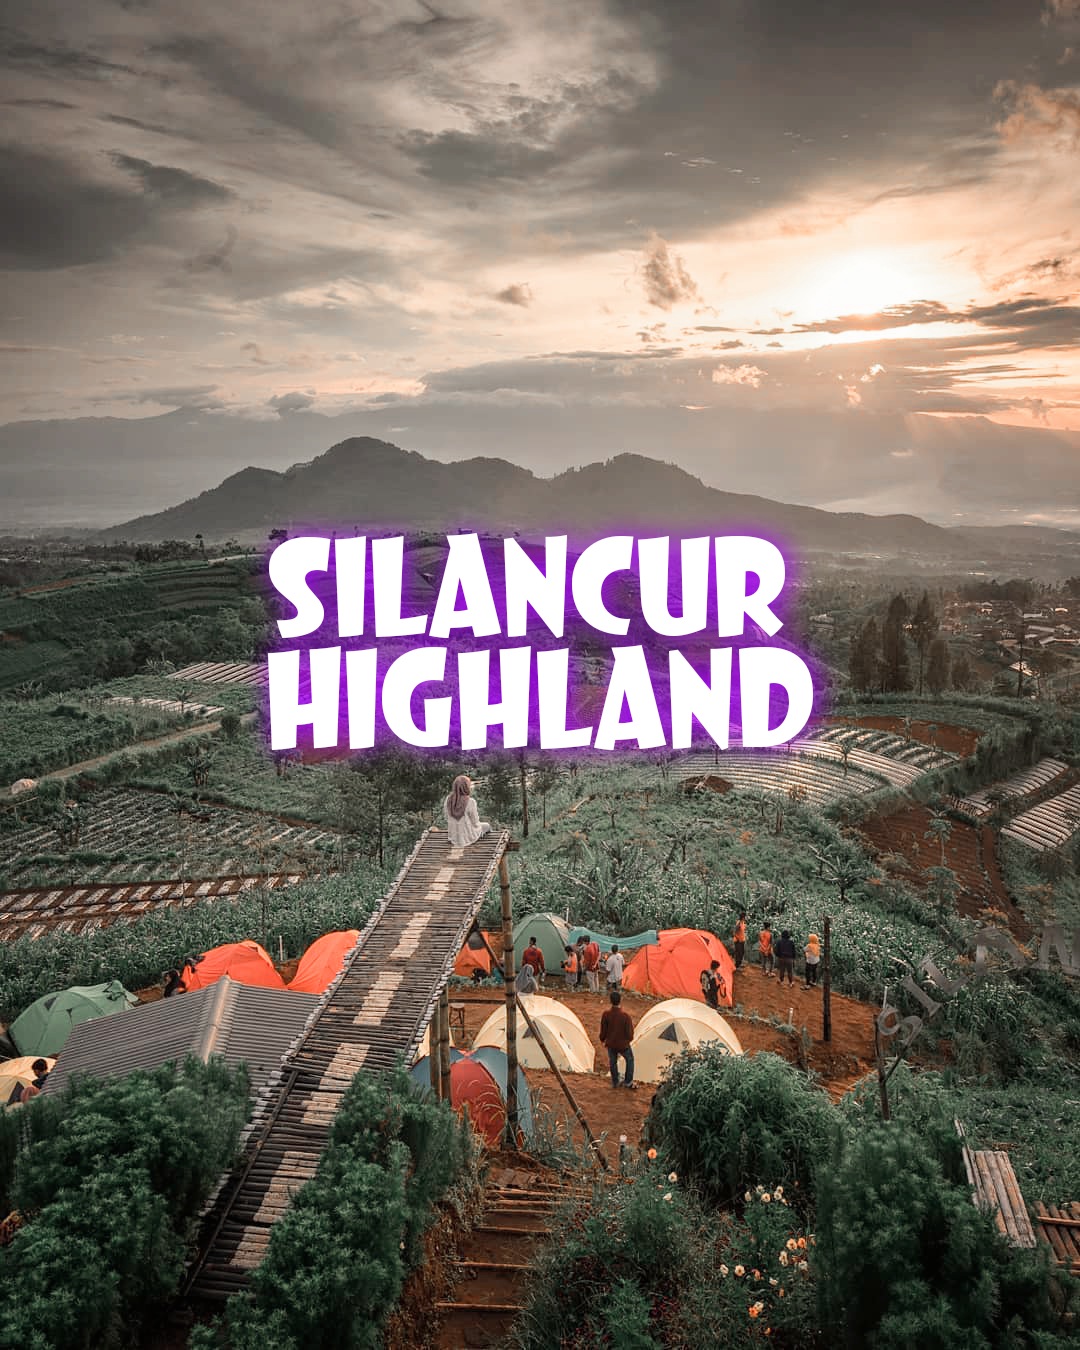 Silancur highland buka